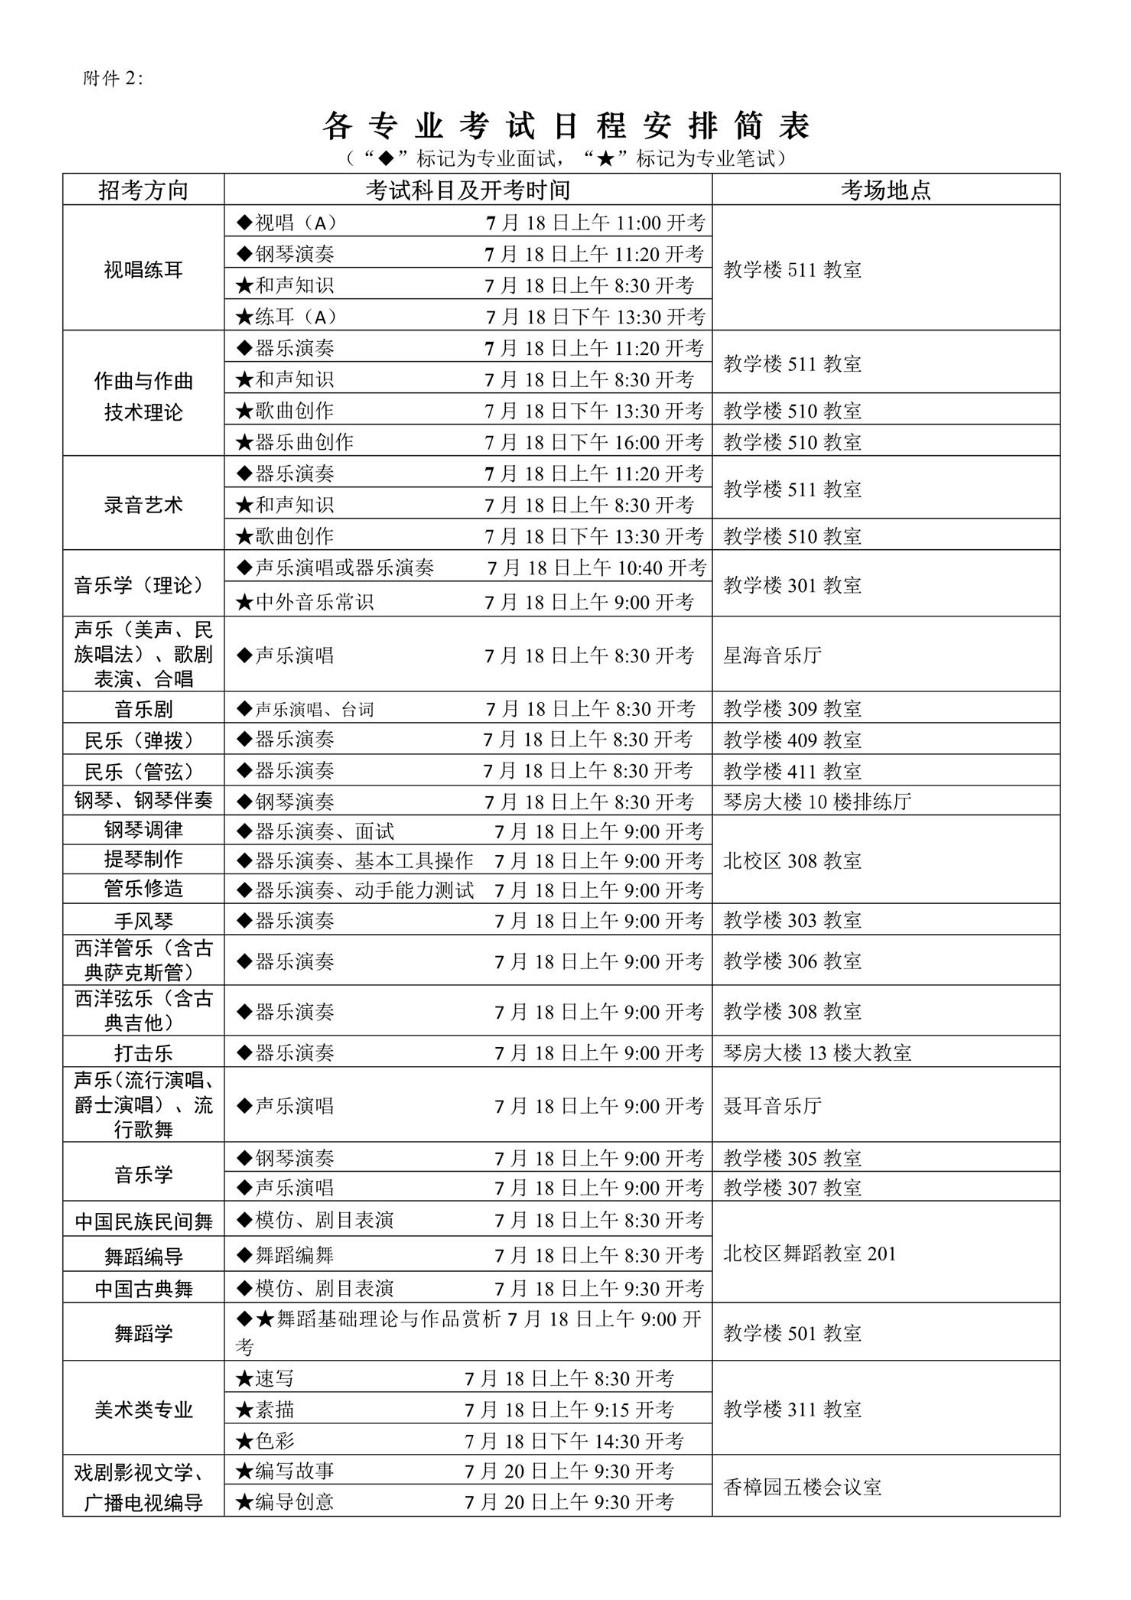 2020年四川音乐学院省外招生考试北京考生和音乐与舞蹈类专业考前异常情况报备的考生专业考试有关安排及要求